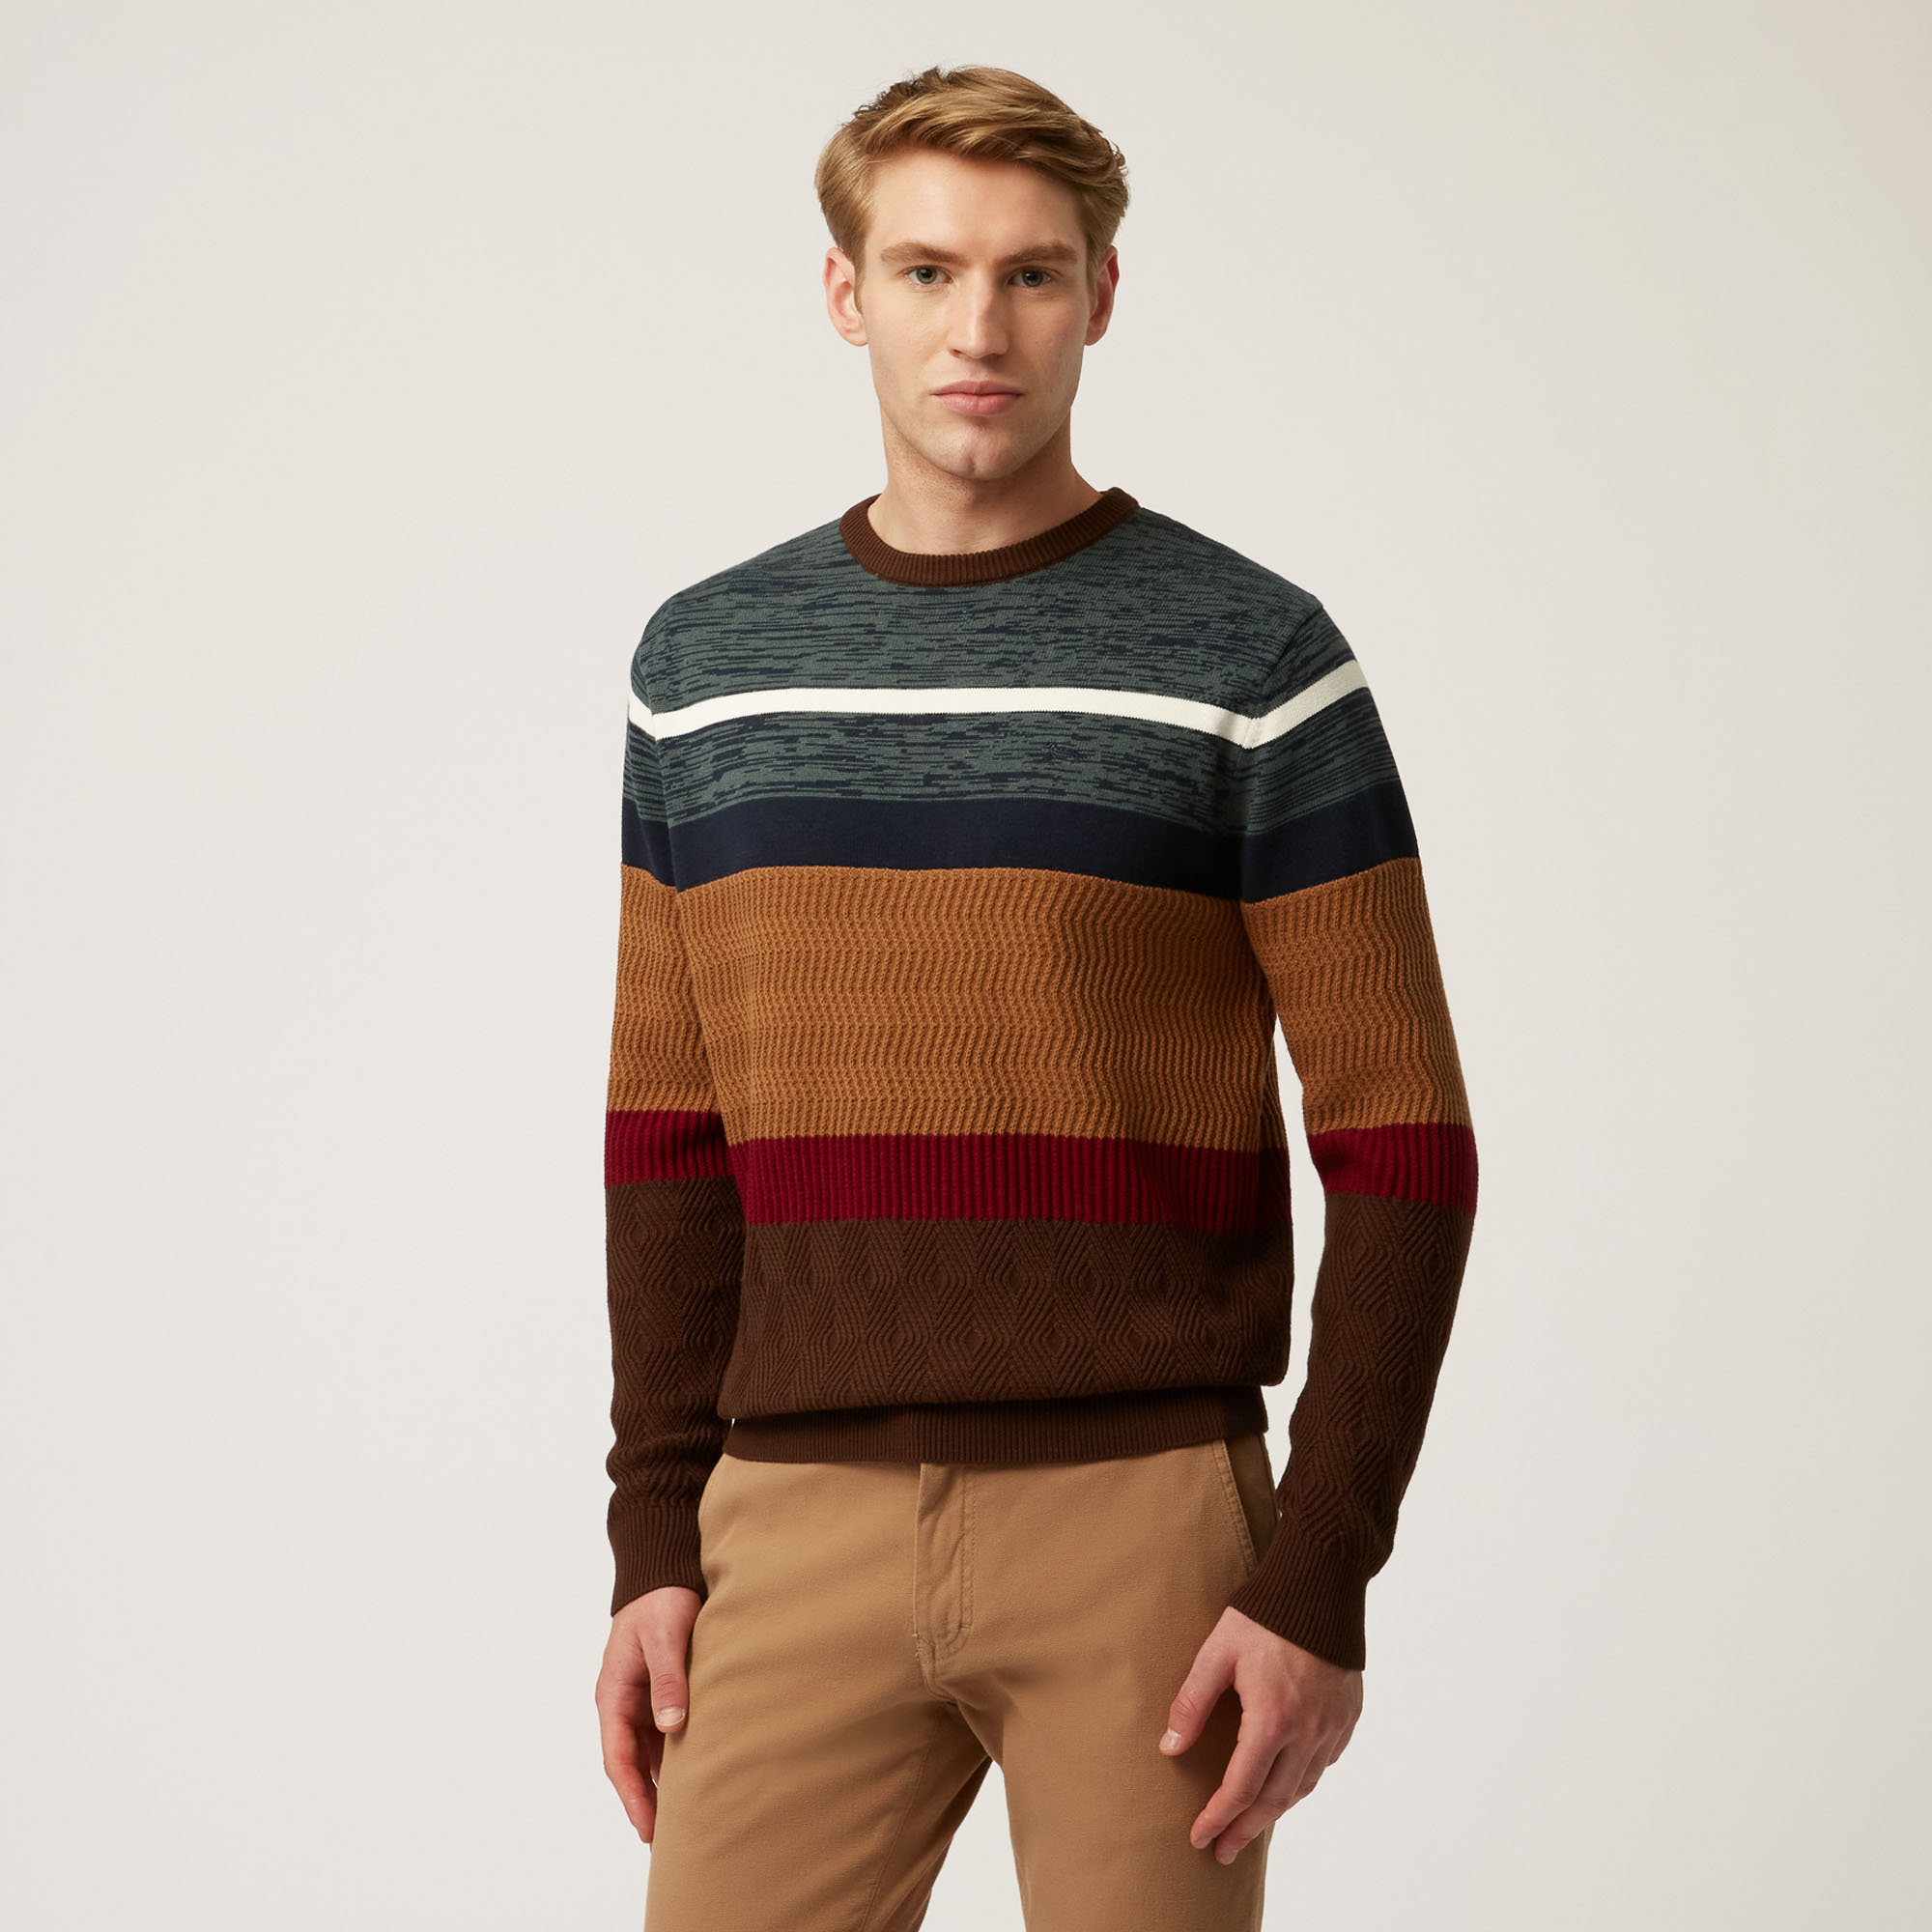 Pullover Mit Rundhalsausschnitt Aus Wolle Und Baumwolle Mit Breiten Horizontalen Streifen, Braun, large